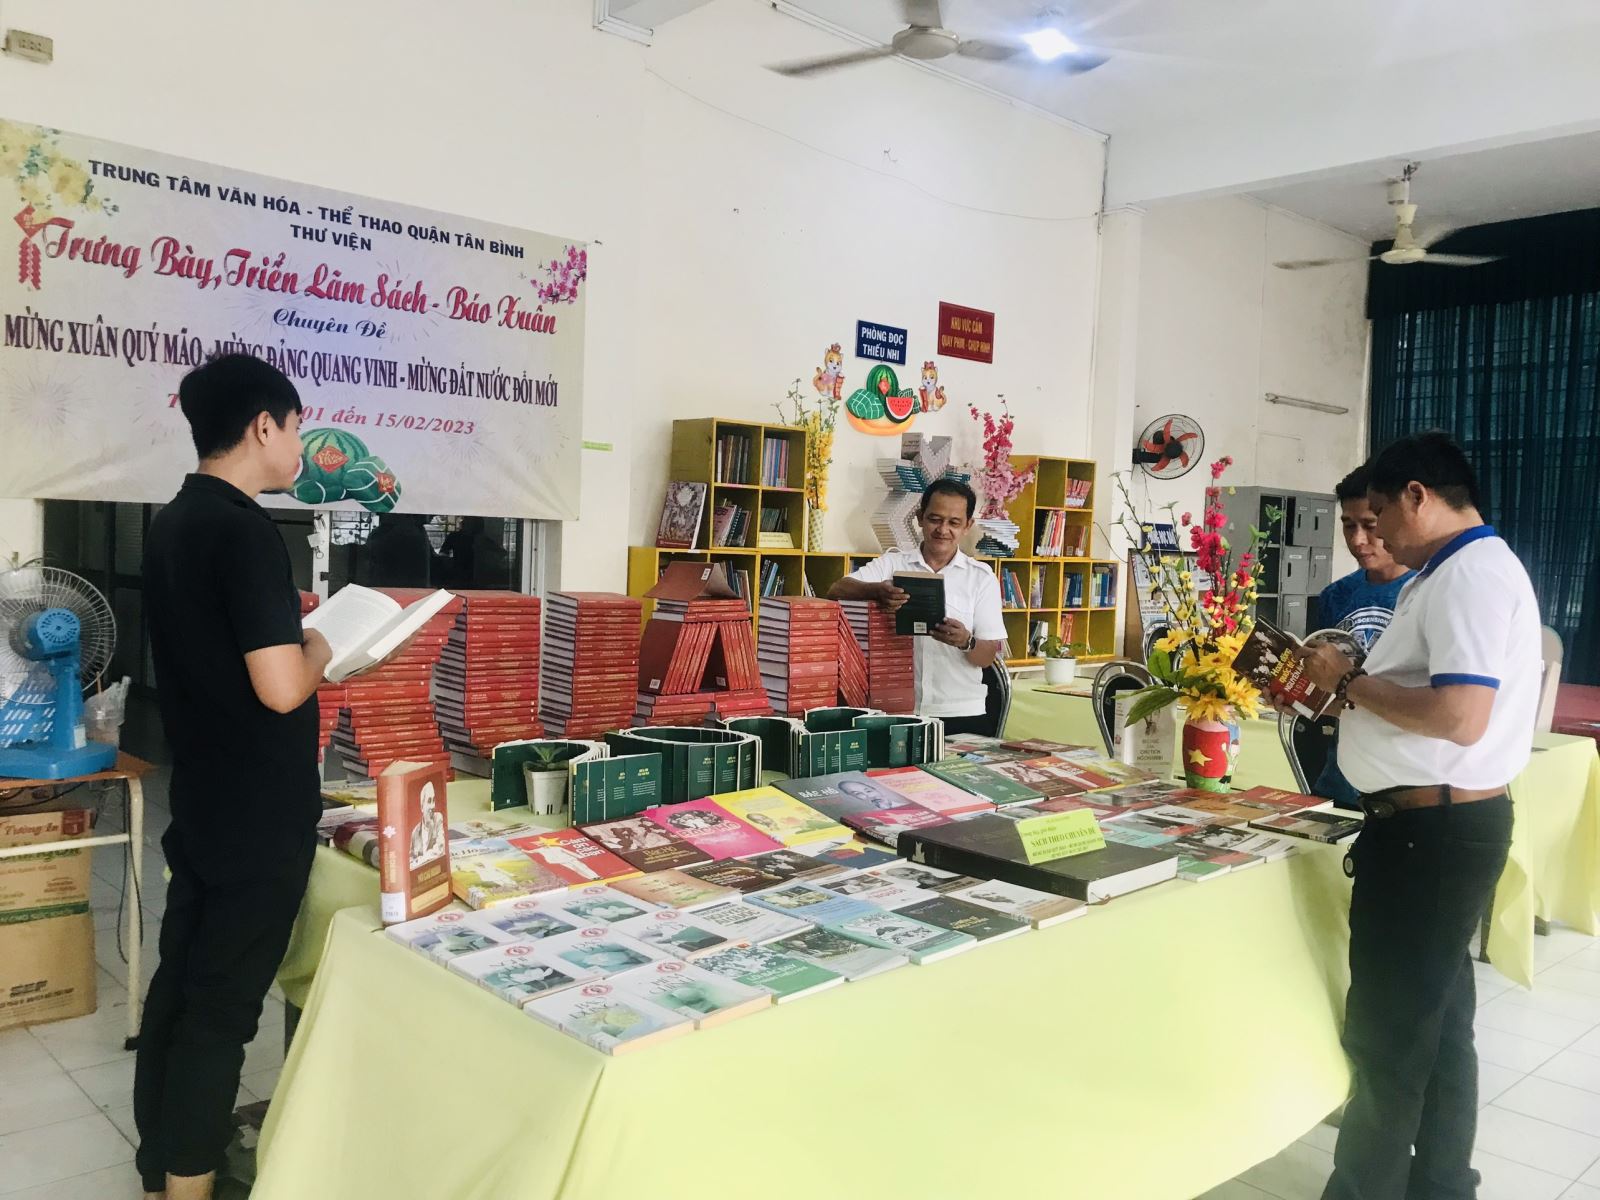 Thư viện quận Tân Bình: Tổ chức luân chuyển Sách - Báo Xuân trưng bày, triển lãm phục vụ tại cơ sở chủ đề: “Mừng Xuân Quý Mão - Mừng Đảng Quang Vinh